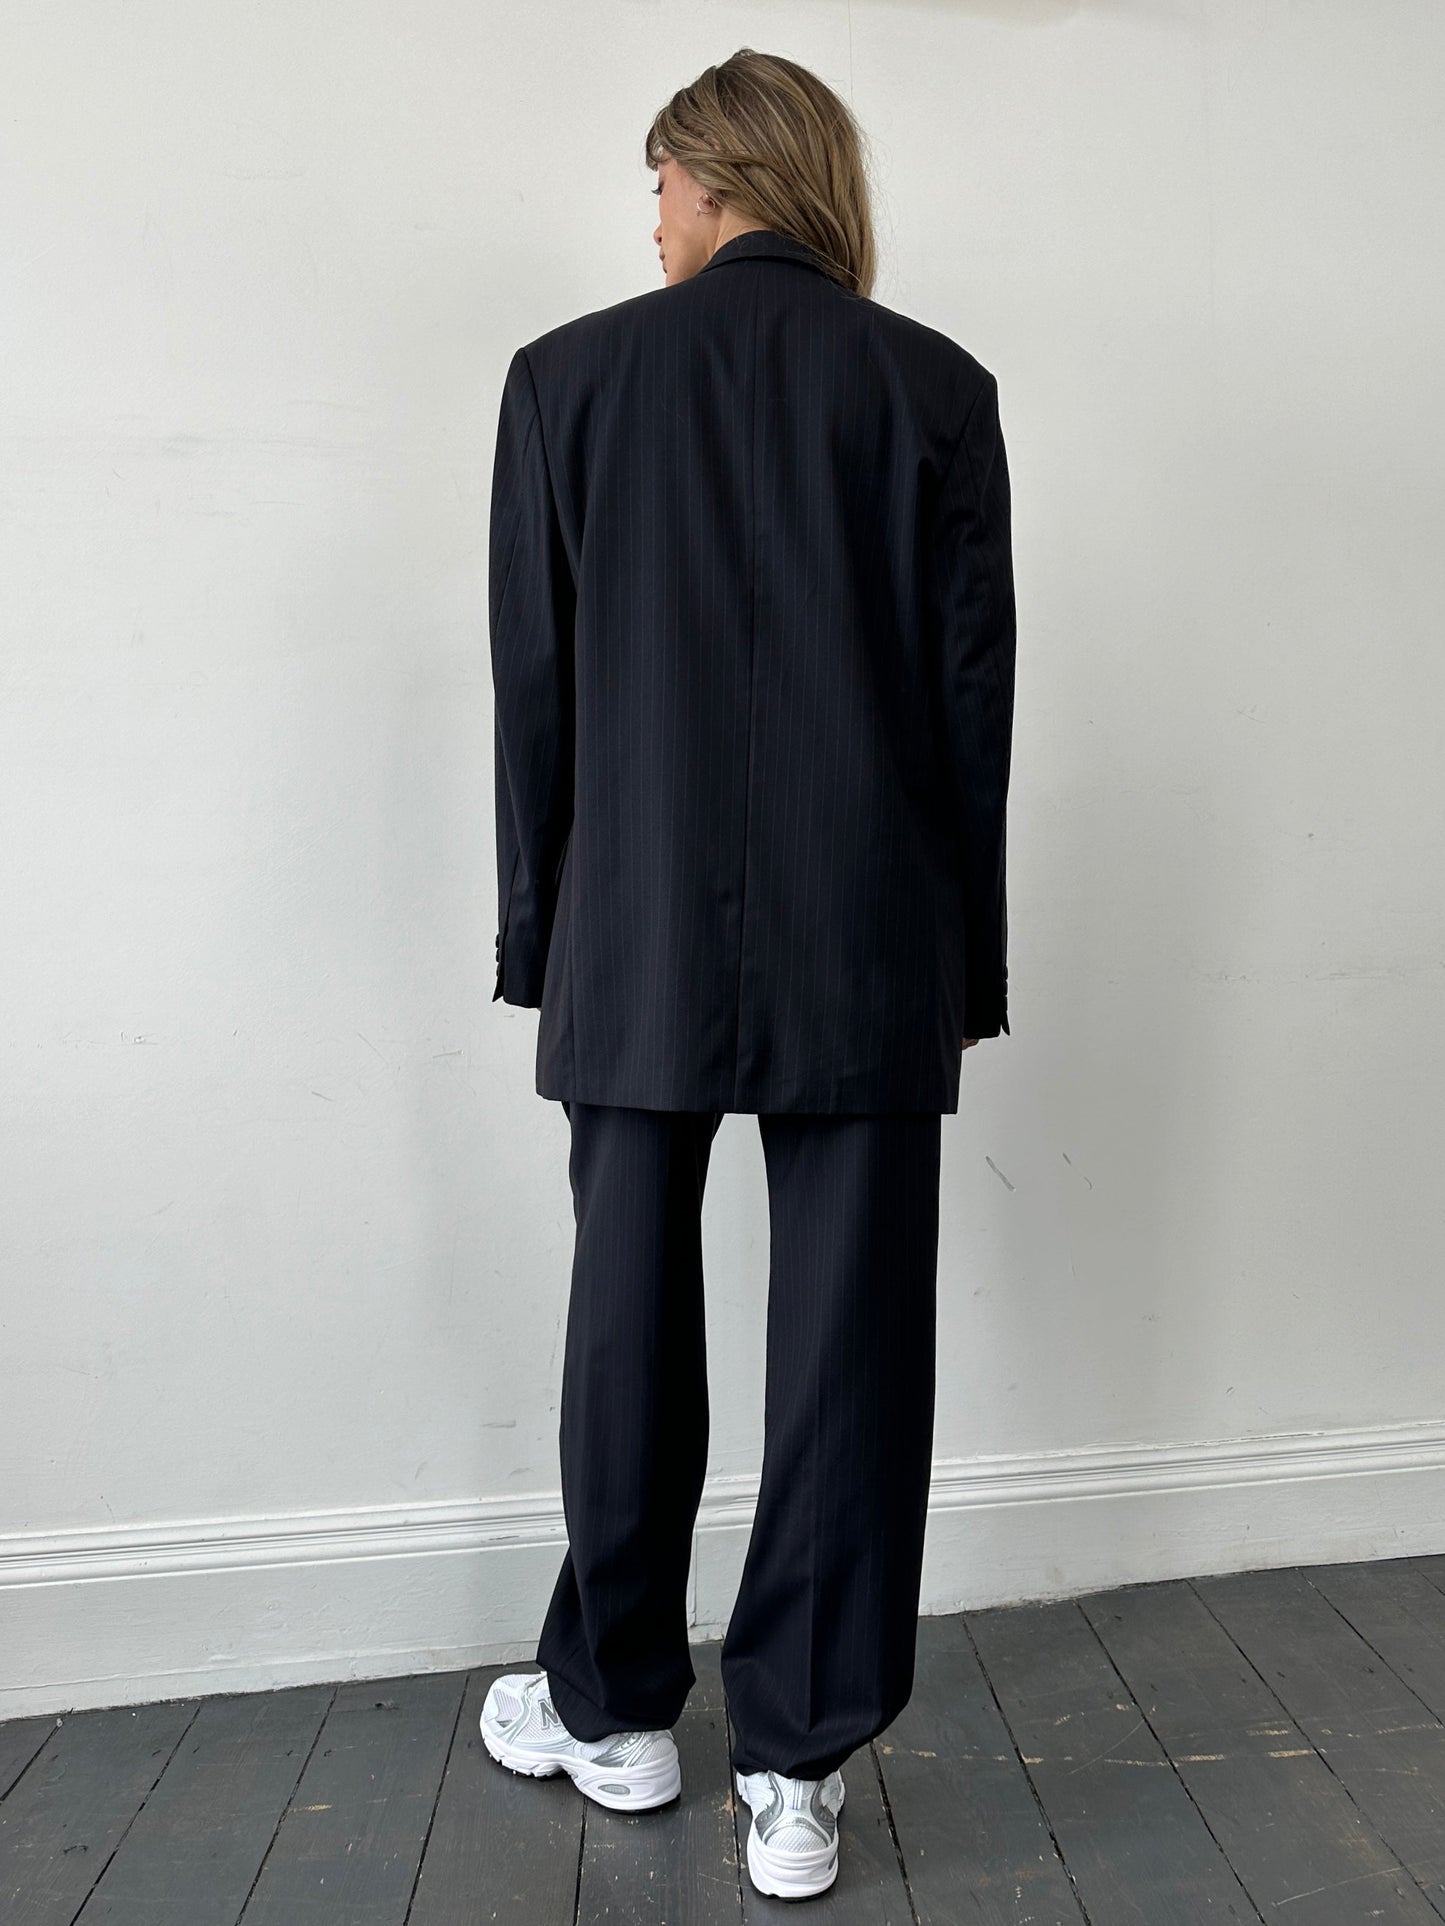 Pierre Balmain Pinstripe Pure Wool Single Breasted Suit - 40L/W32